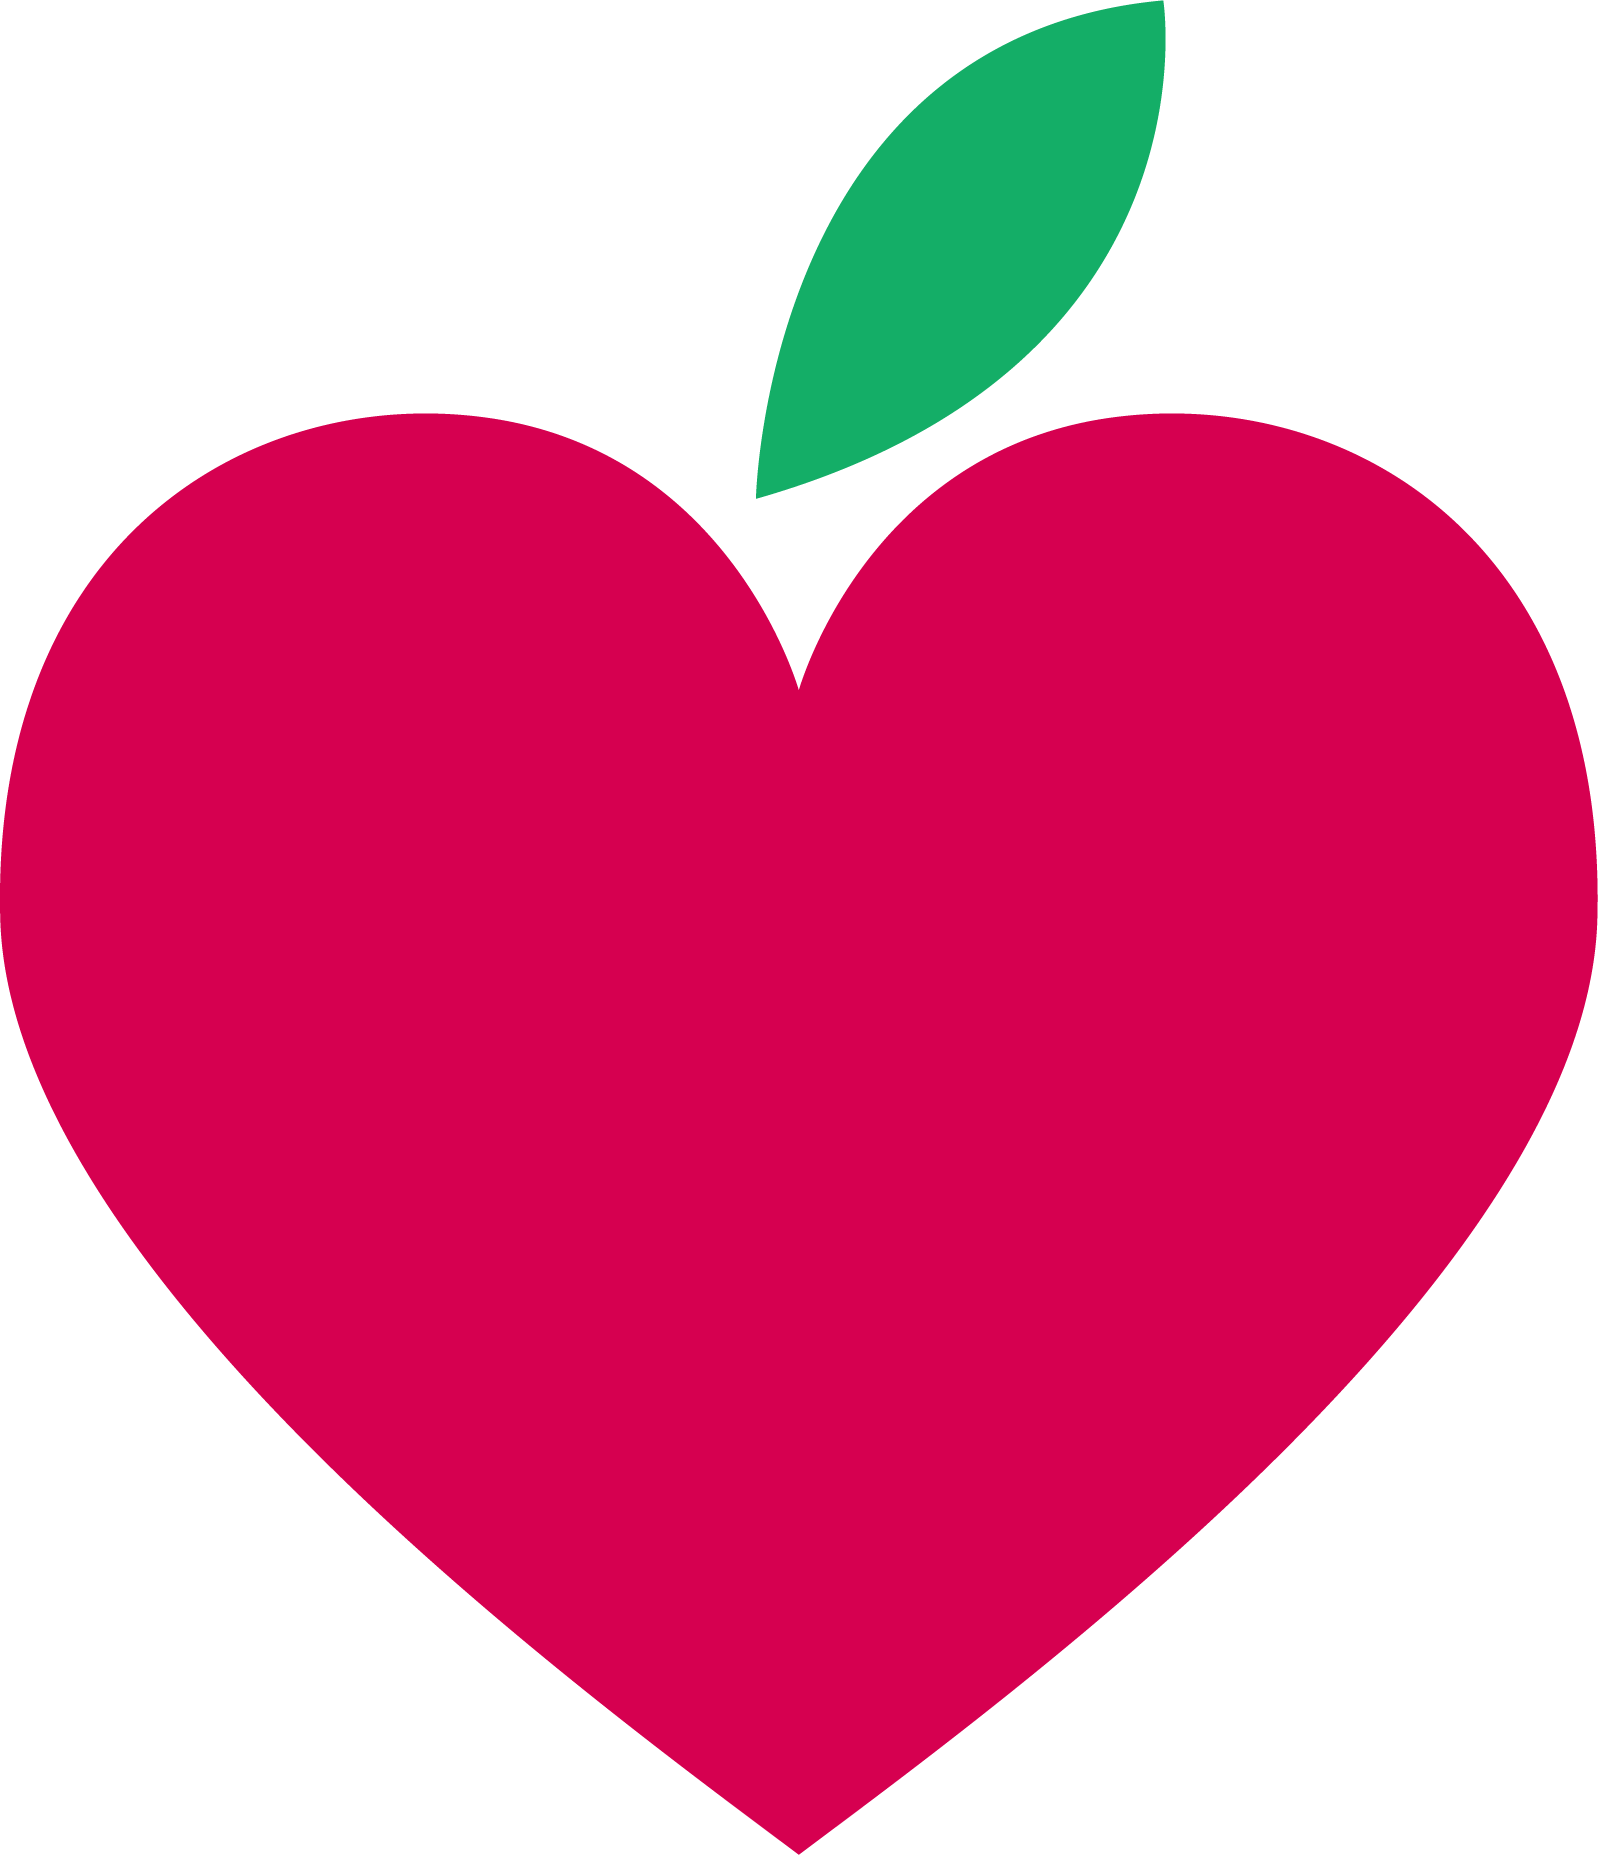 Icon - Apple Hearts - Manzana En Forma De Corazon (1598x1855)